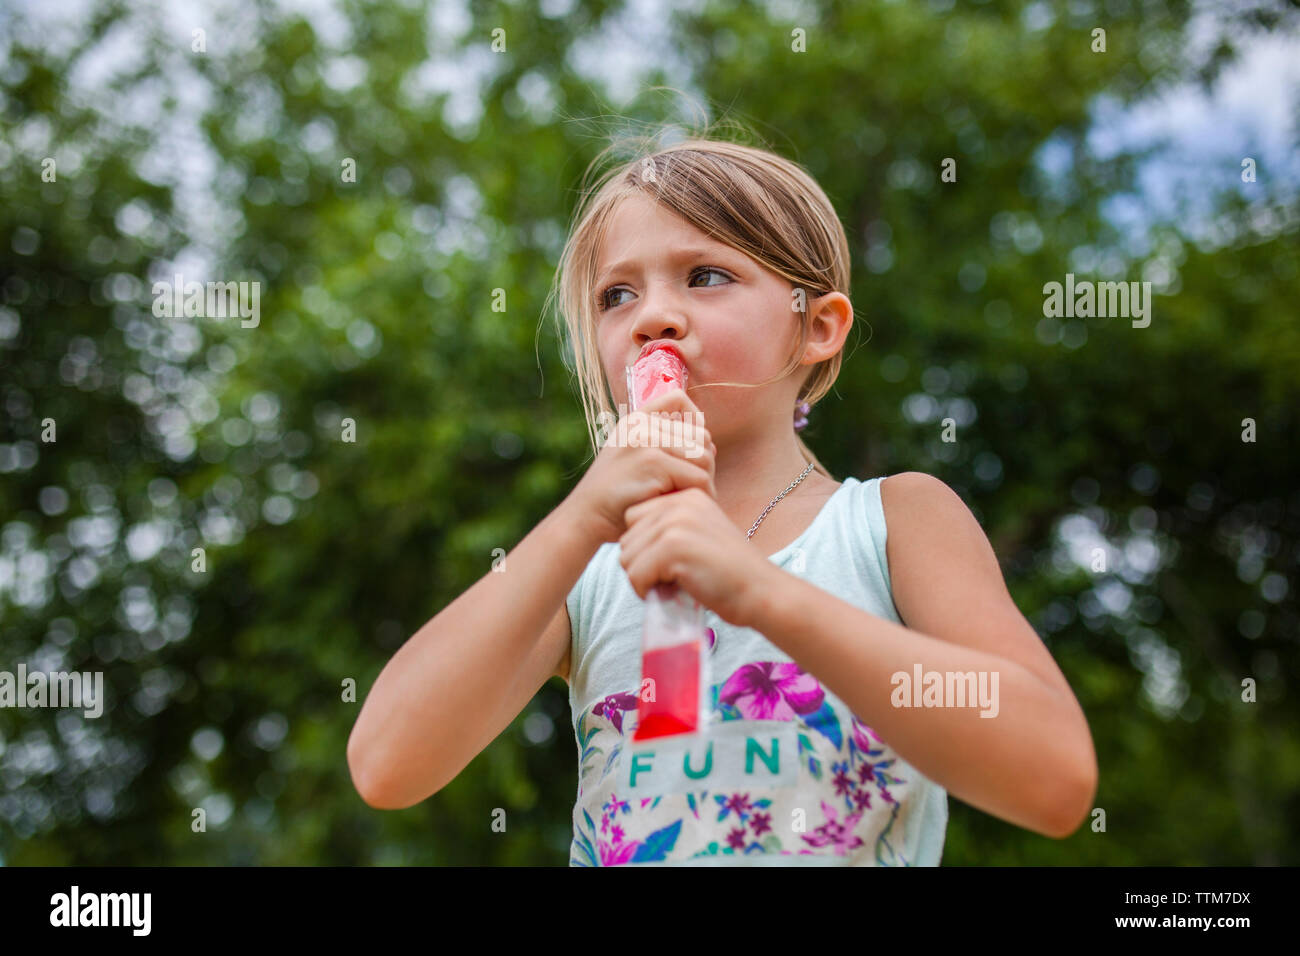 Basso angolo vista della ragazza che guarda lontano mentre mangia ghiaccio aromatizzato al park Foto Stock